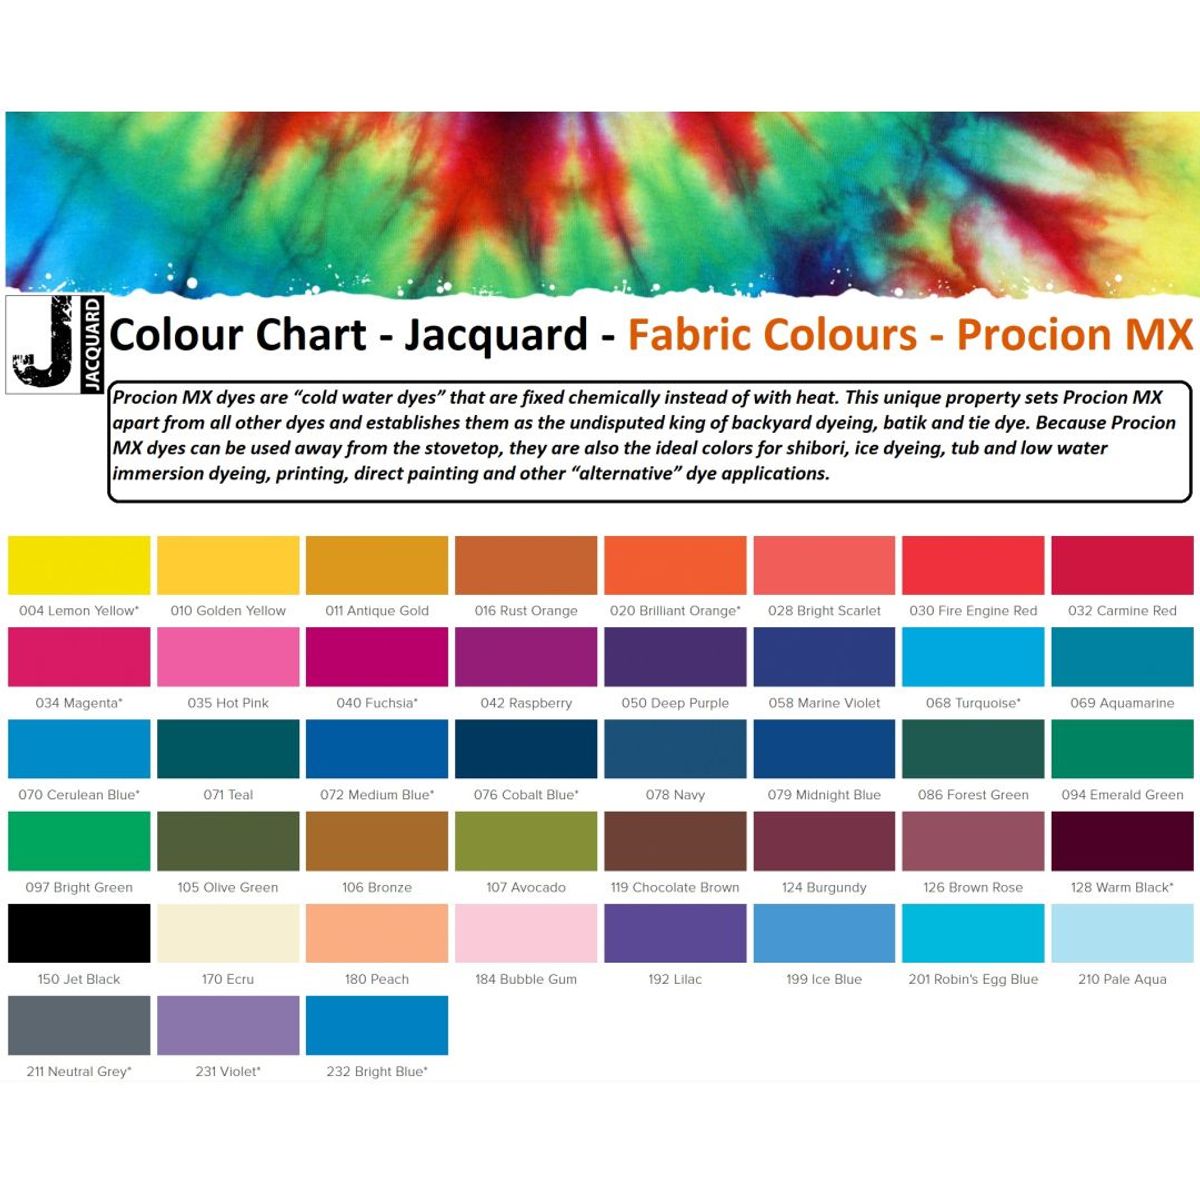 Jacquard - Procion MX Dye - Stoff Textil - Warm Black 128